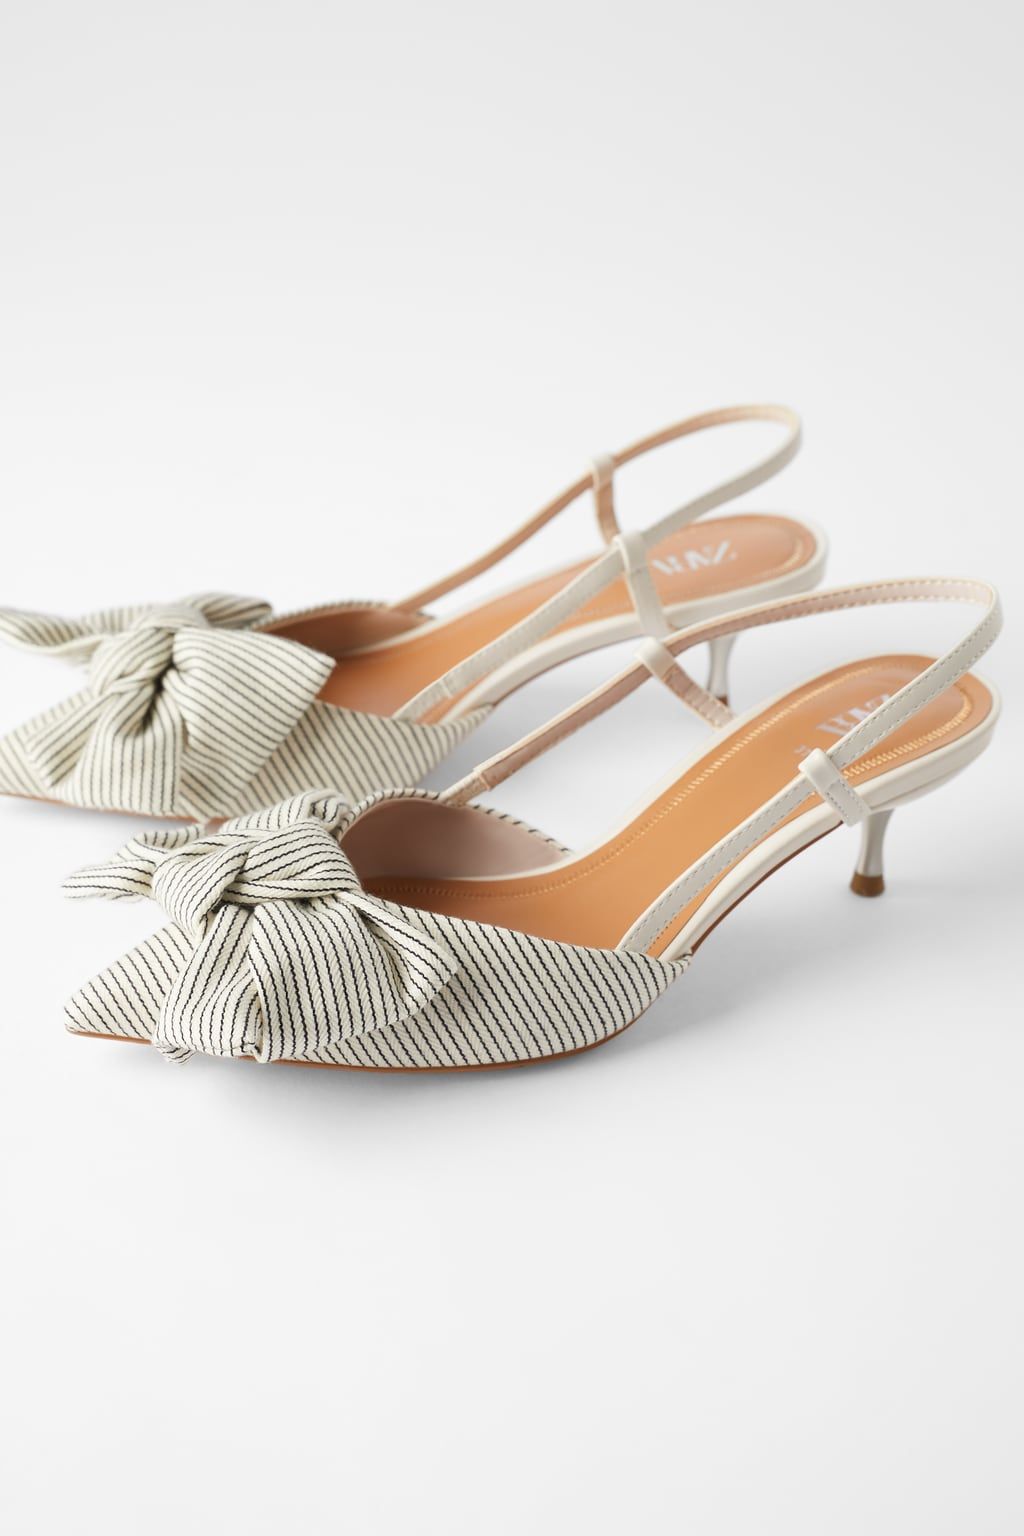 Trendy and elegant kitten heel shoes